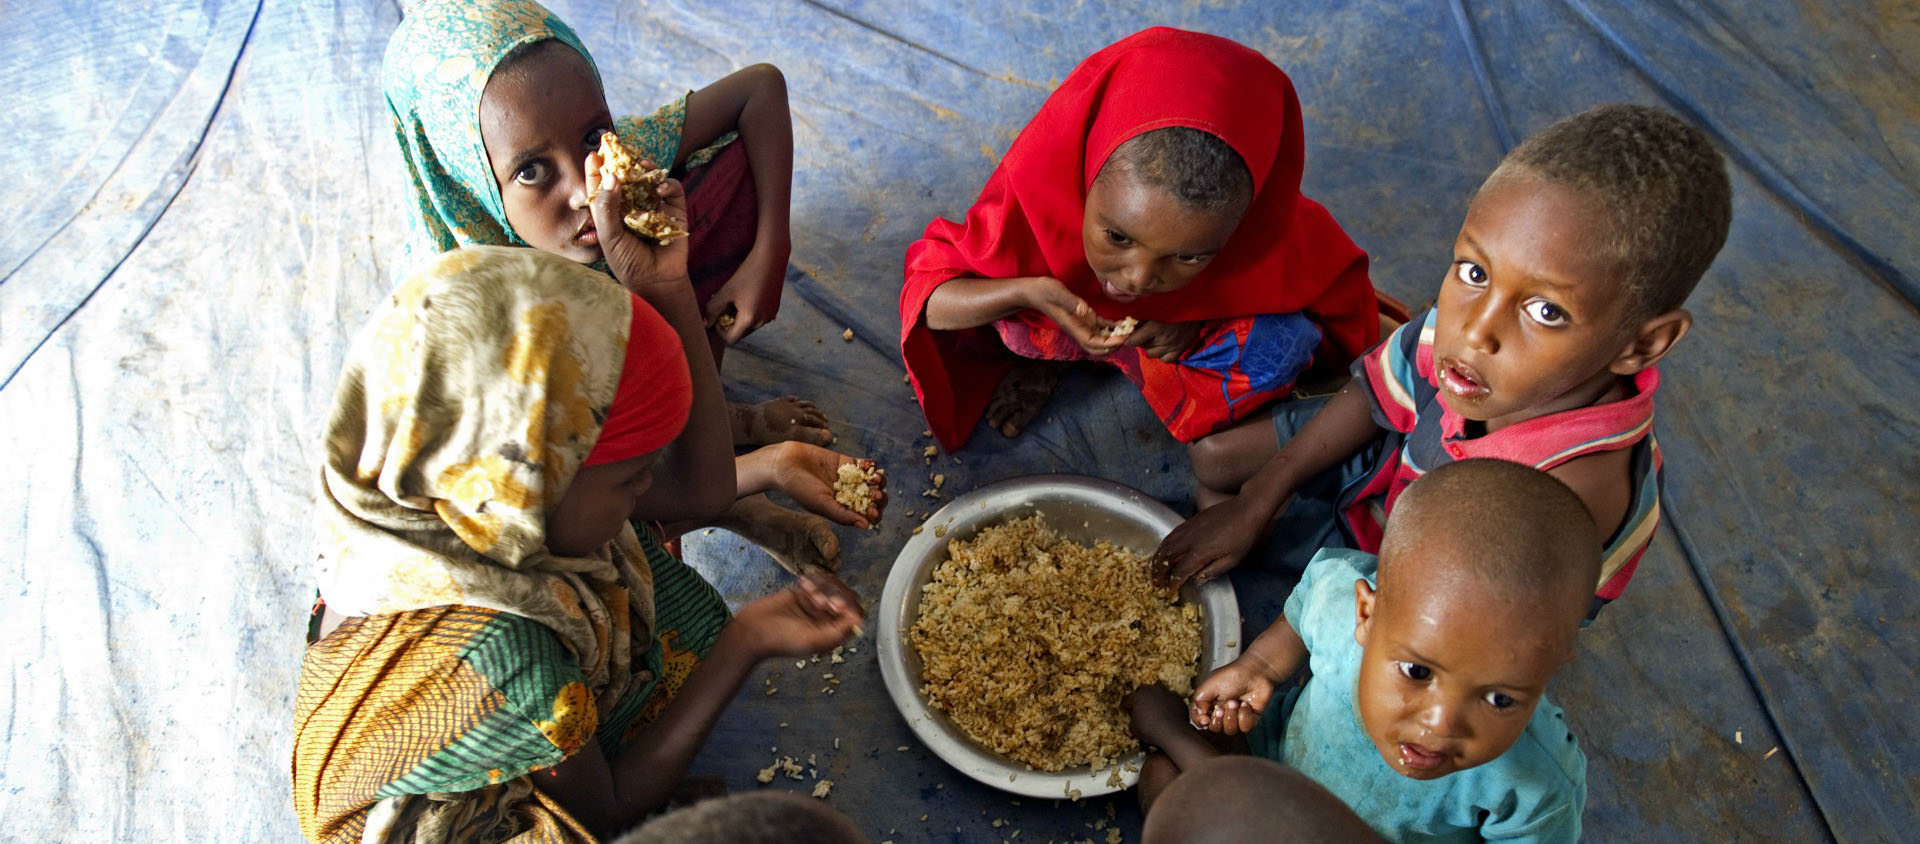 "De puissants intérêts économiques empêchent la conception d’un système alimentaire qui réponde aux valeurs du bien commun", dénonce la pape | © UN Photos/Flickr/CC BY-NC-ND 2.0